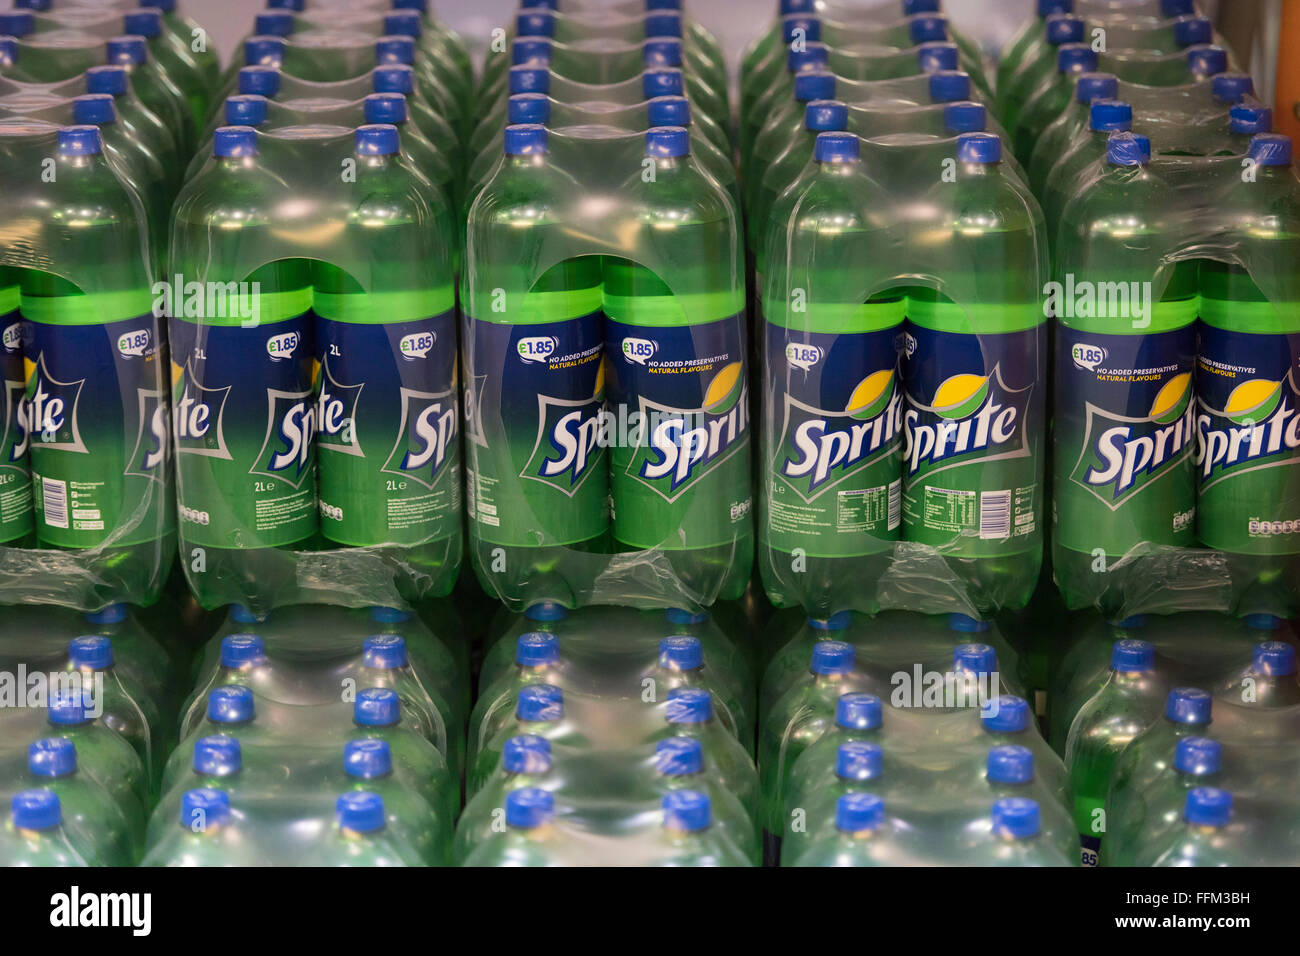 Bottiglie di zucchero di soft drink Sprite stoccati in un magazzino. Foto Stock